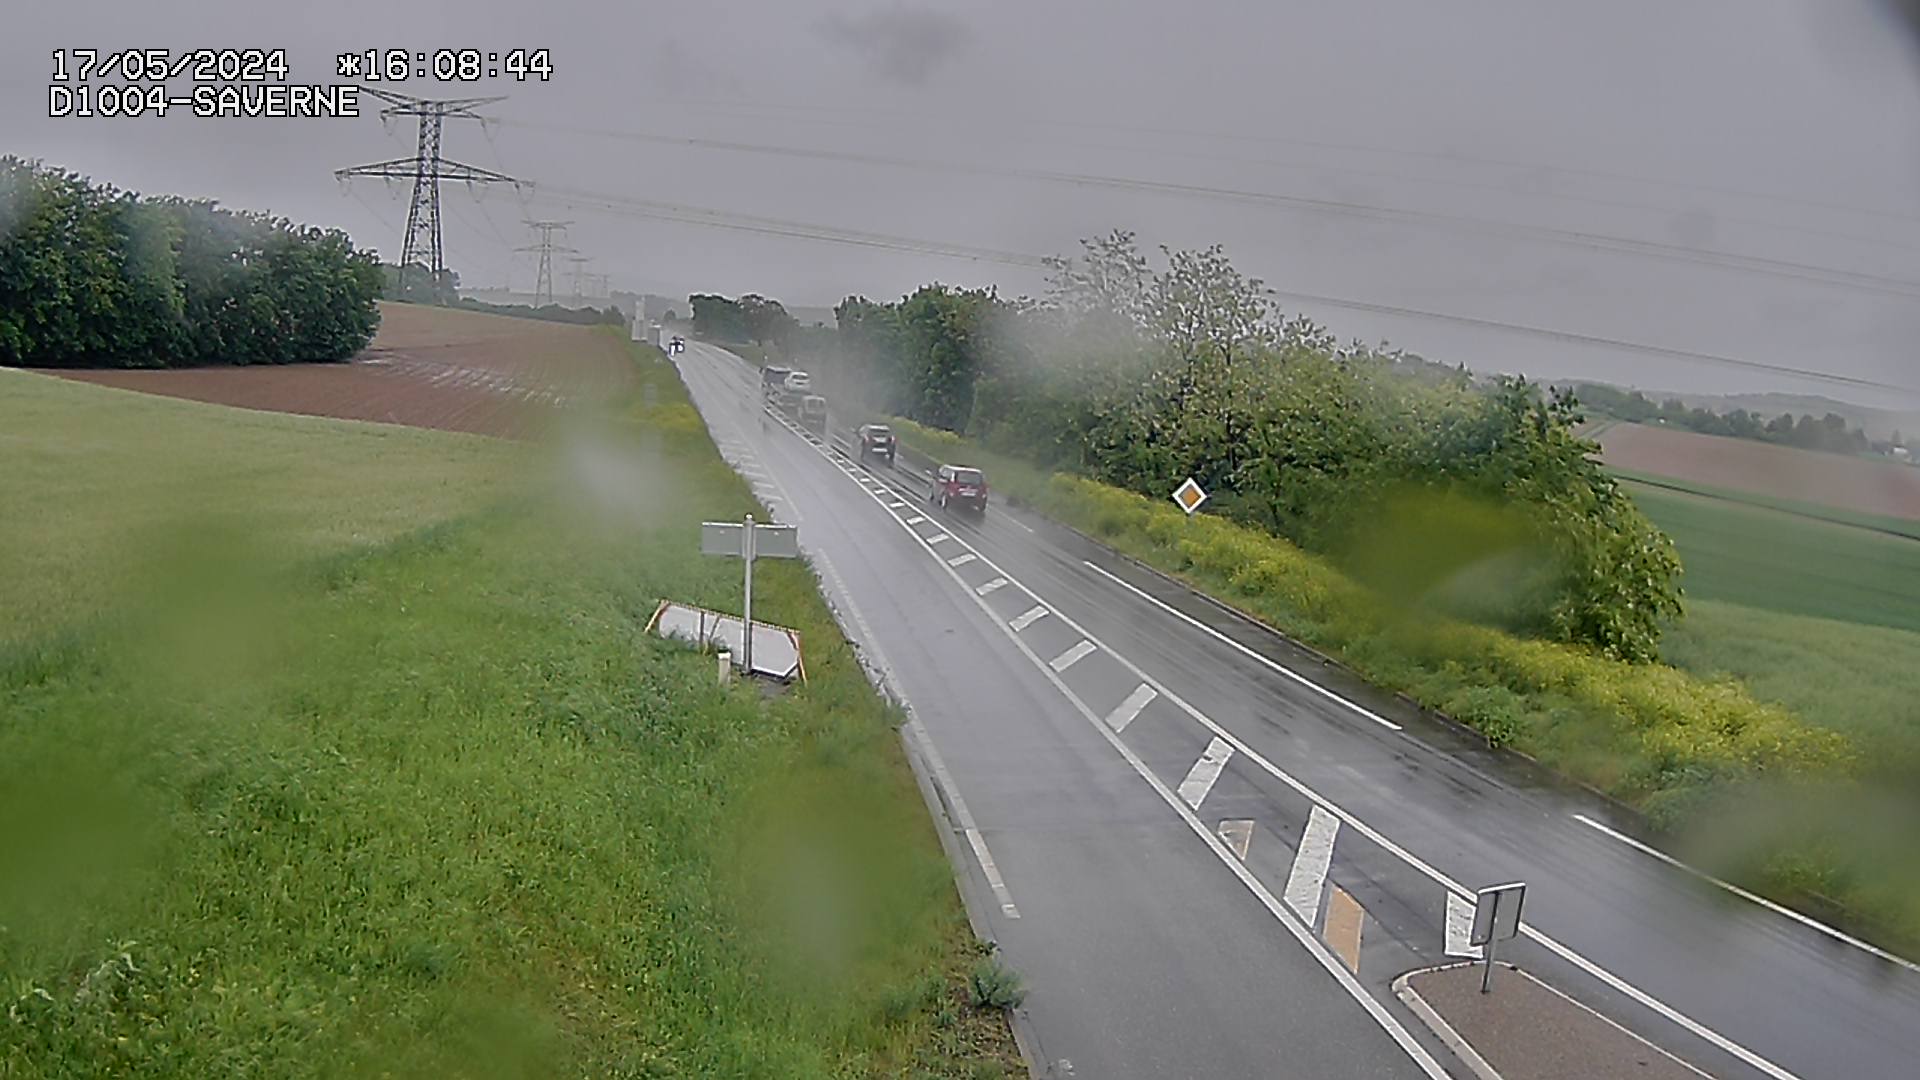 <h2>Webcam routière sur la D1004 en direction de Saverne à Wasselonne</h2>